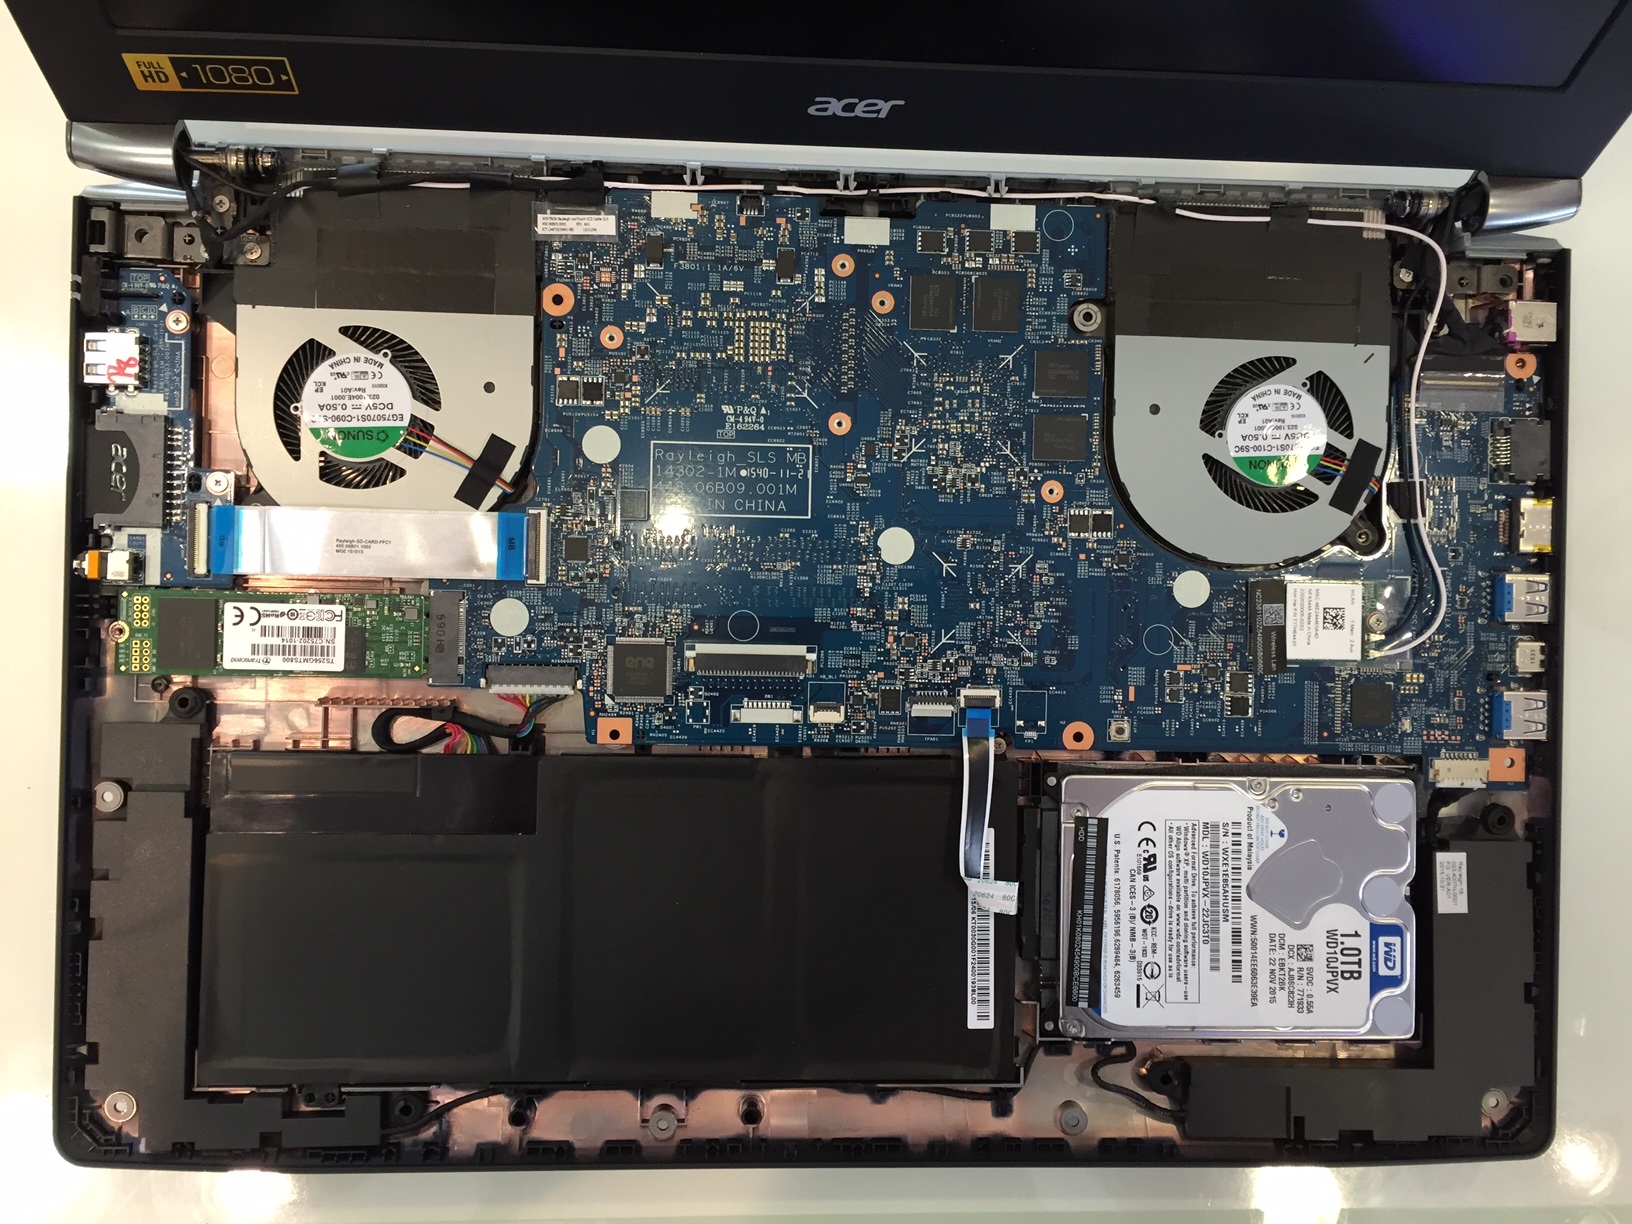 Dell Inspiron 7559 vs Asus N551VW vs Acer Aspire V Nitro VN7-592G teszt